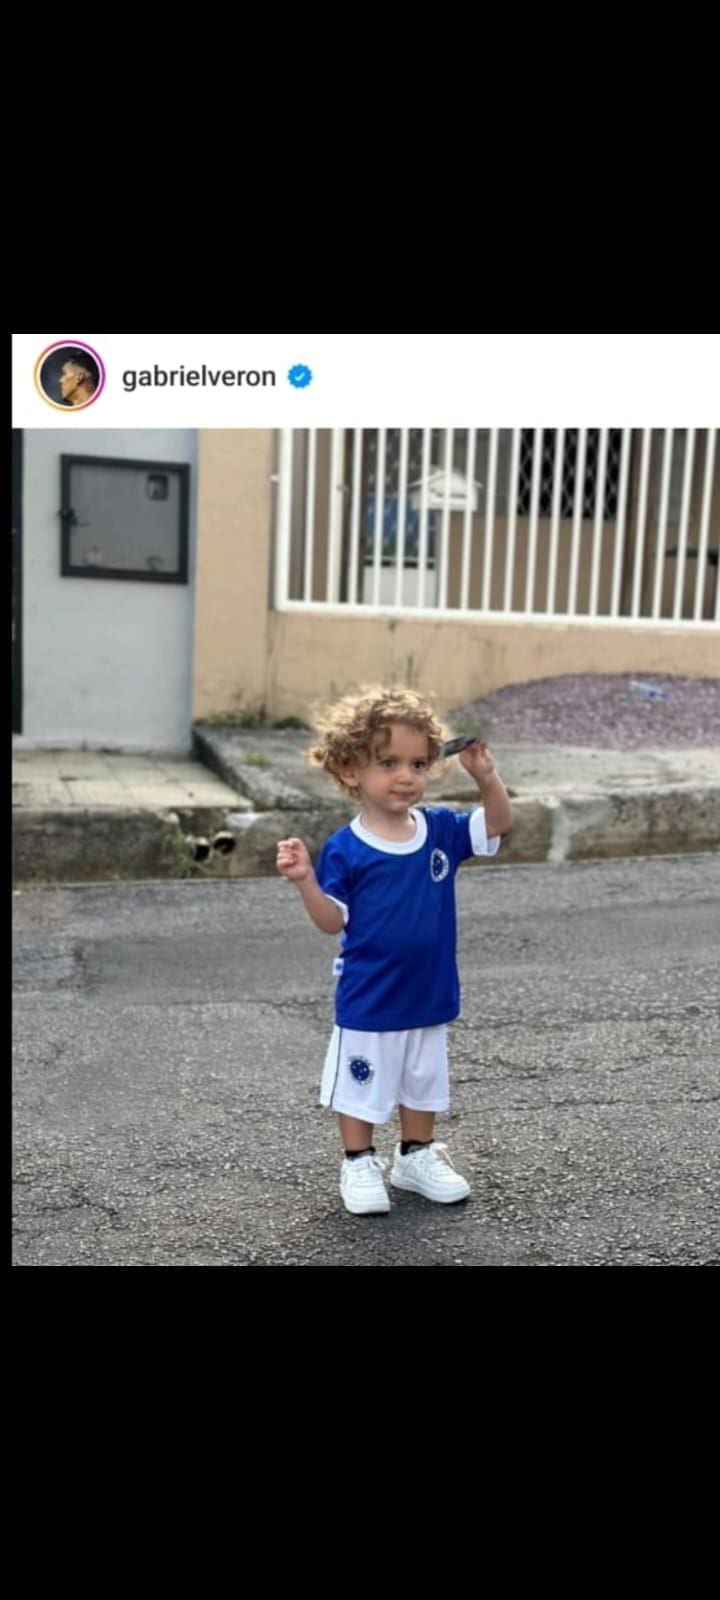 Atacante do Cruzeiro postou foto do filho com uniforme completo do Cruzeiro